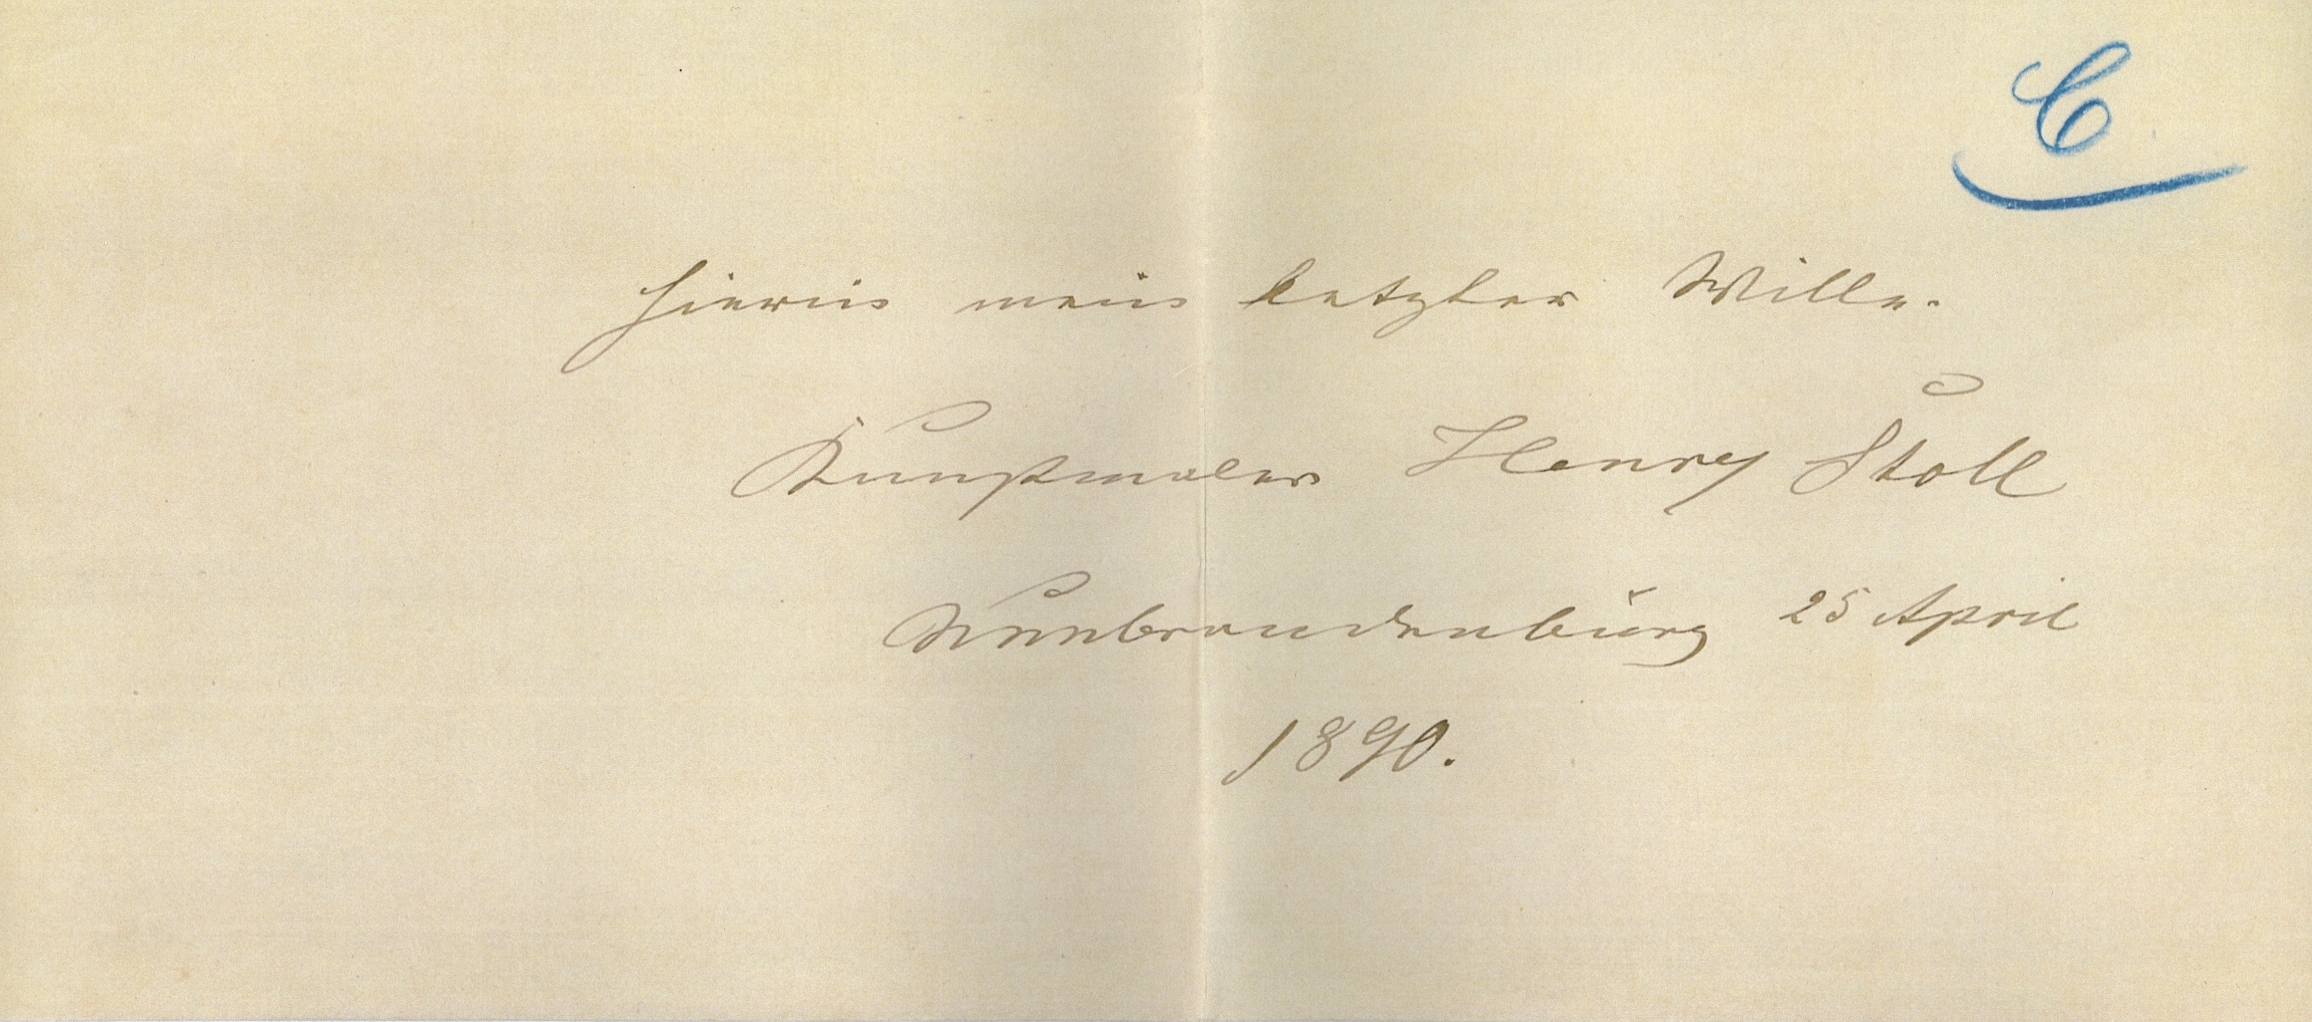 Couvert der Testamentsurkunde von Henry Stoll, 25.4.1890. Amtsgericht Neubrandenburg, So, 1888, 294, C.